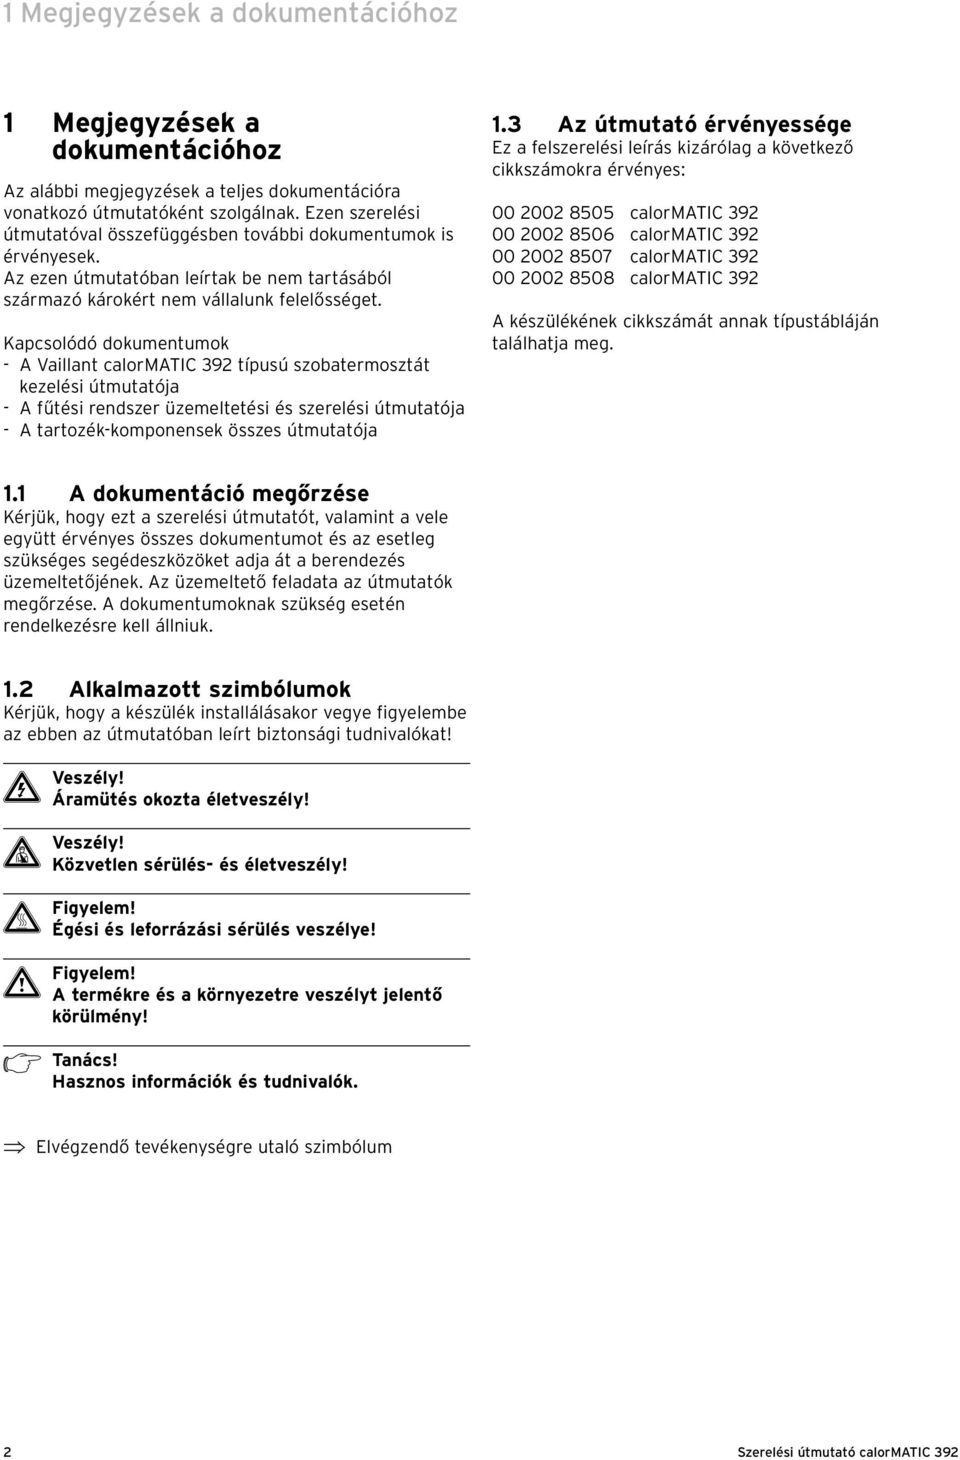 Kapcsolódó dokumentumok - A Vaillant calormatic 392 típusú szobatermosztát kezelési útmutatója - A fűtési rendszer üzemeltetési és szerelési útmutatója - A tartozék-komponensek összes útmutatója 1.